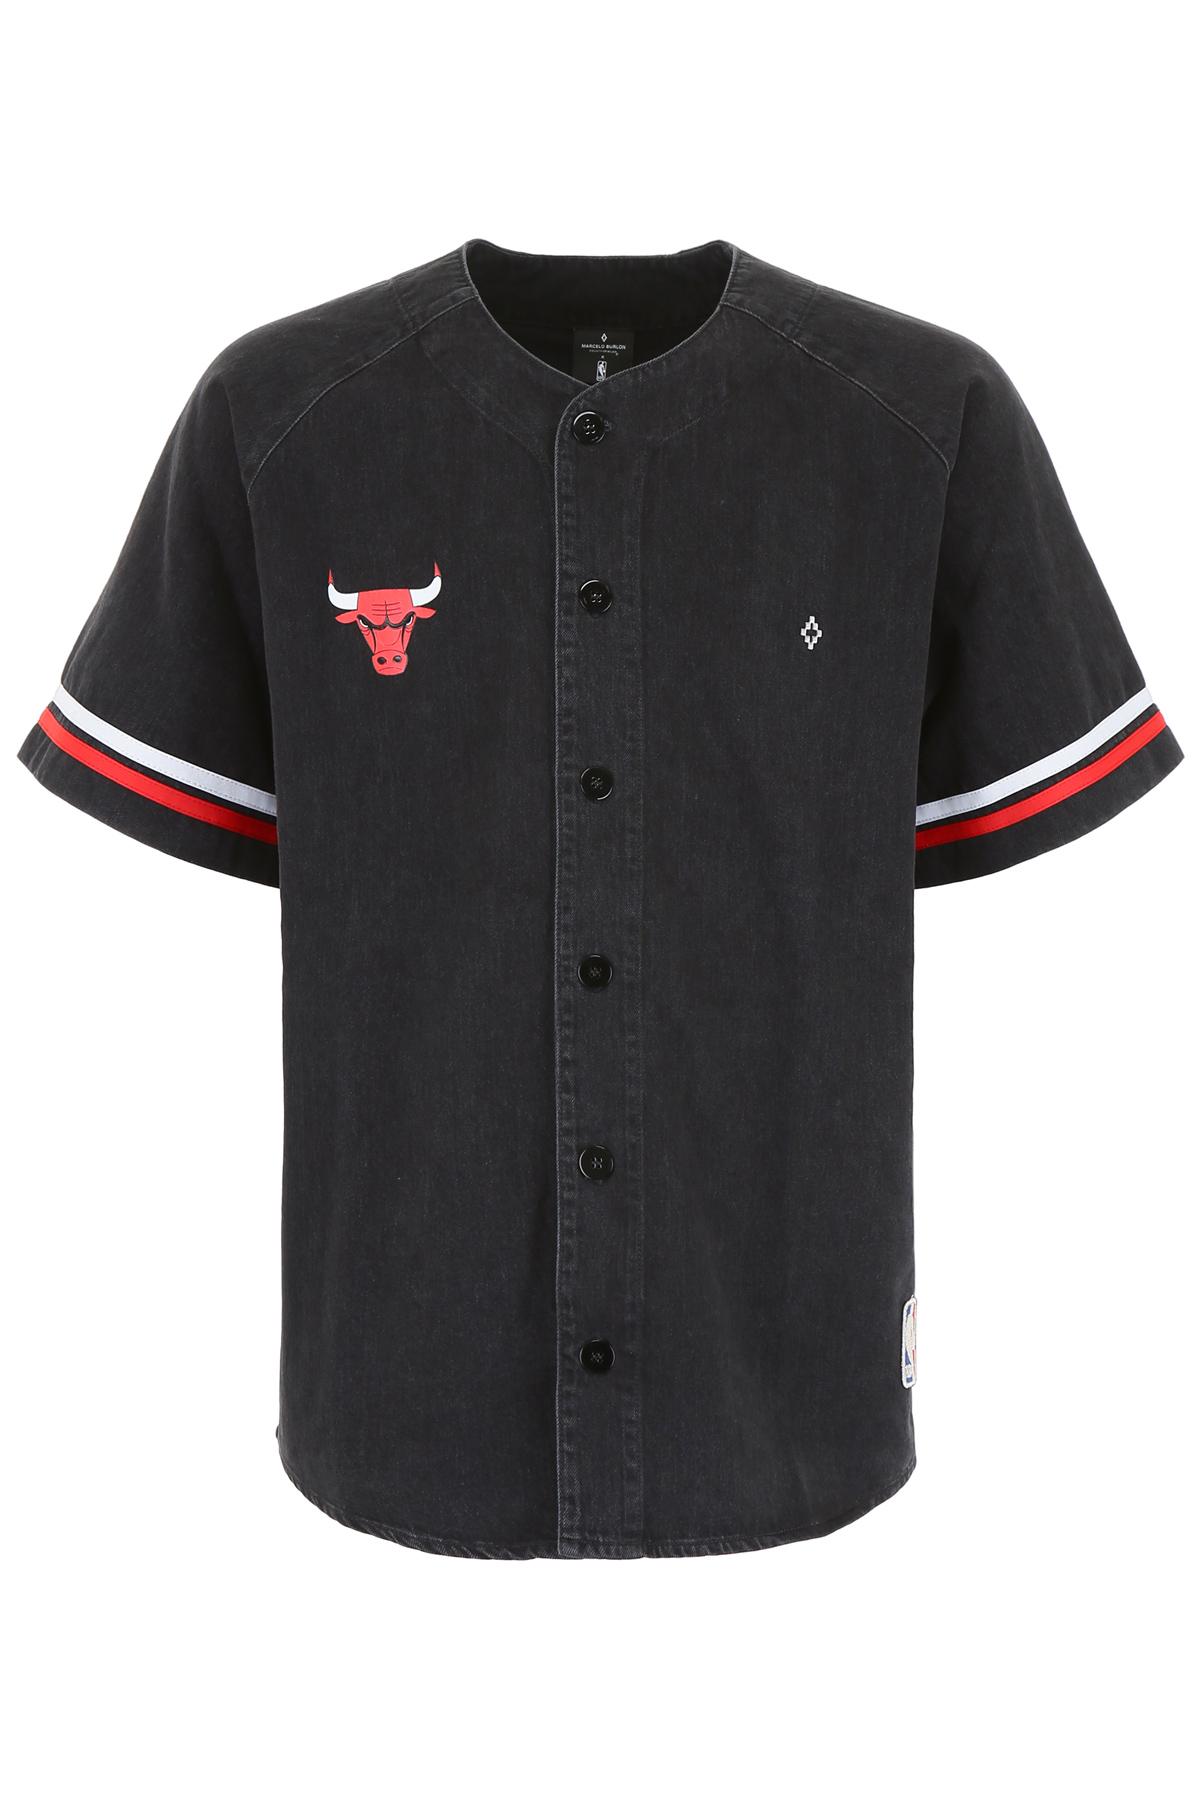 Marcelo Burlon Chicago Bulls Denim Shirt in Black for Men - Lyst